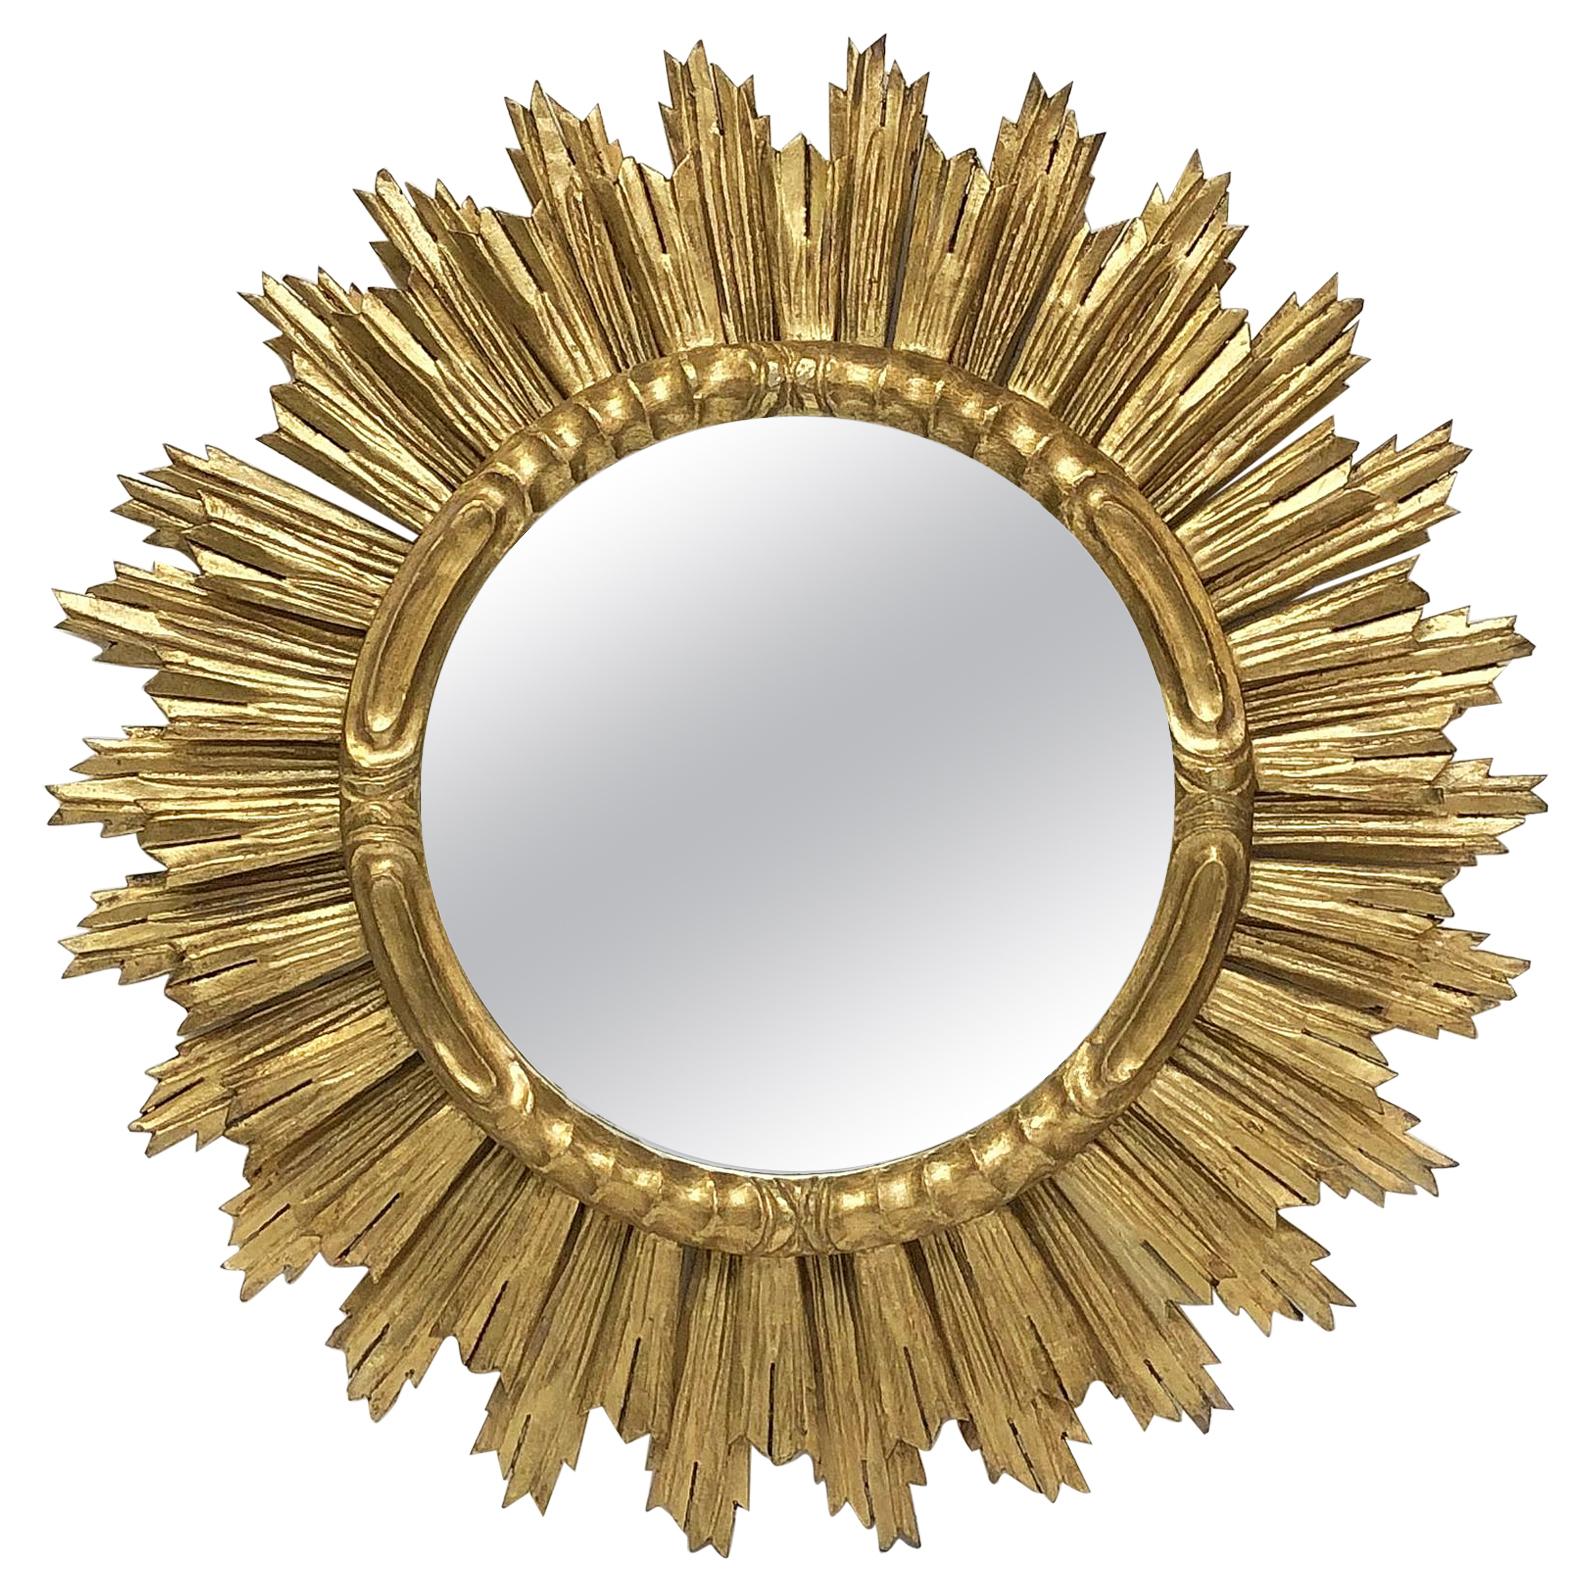 Large French Gilt Starburst or Sunburst Mirror (Diameter 29)